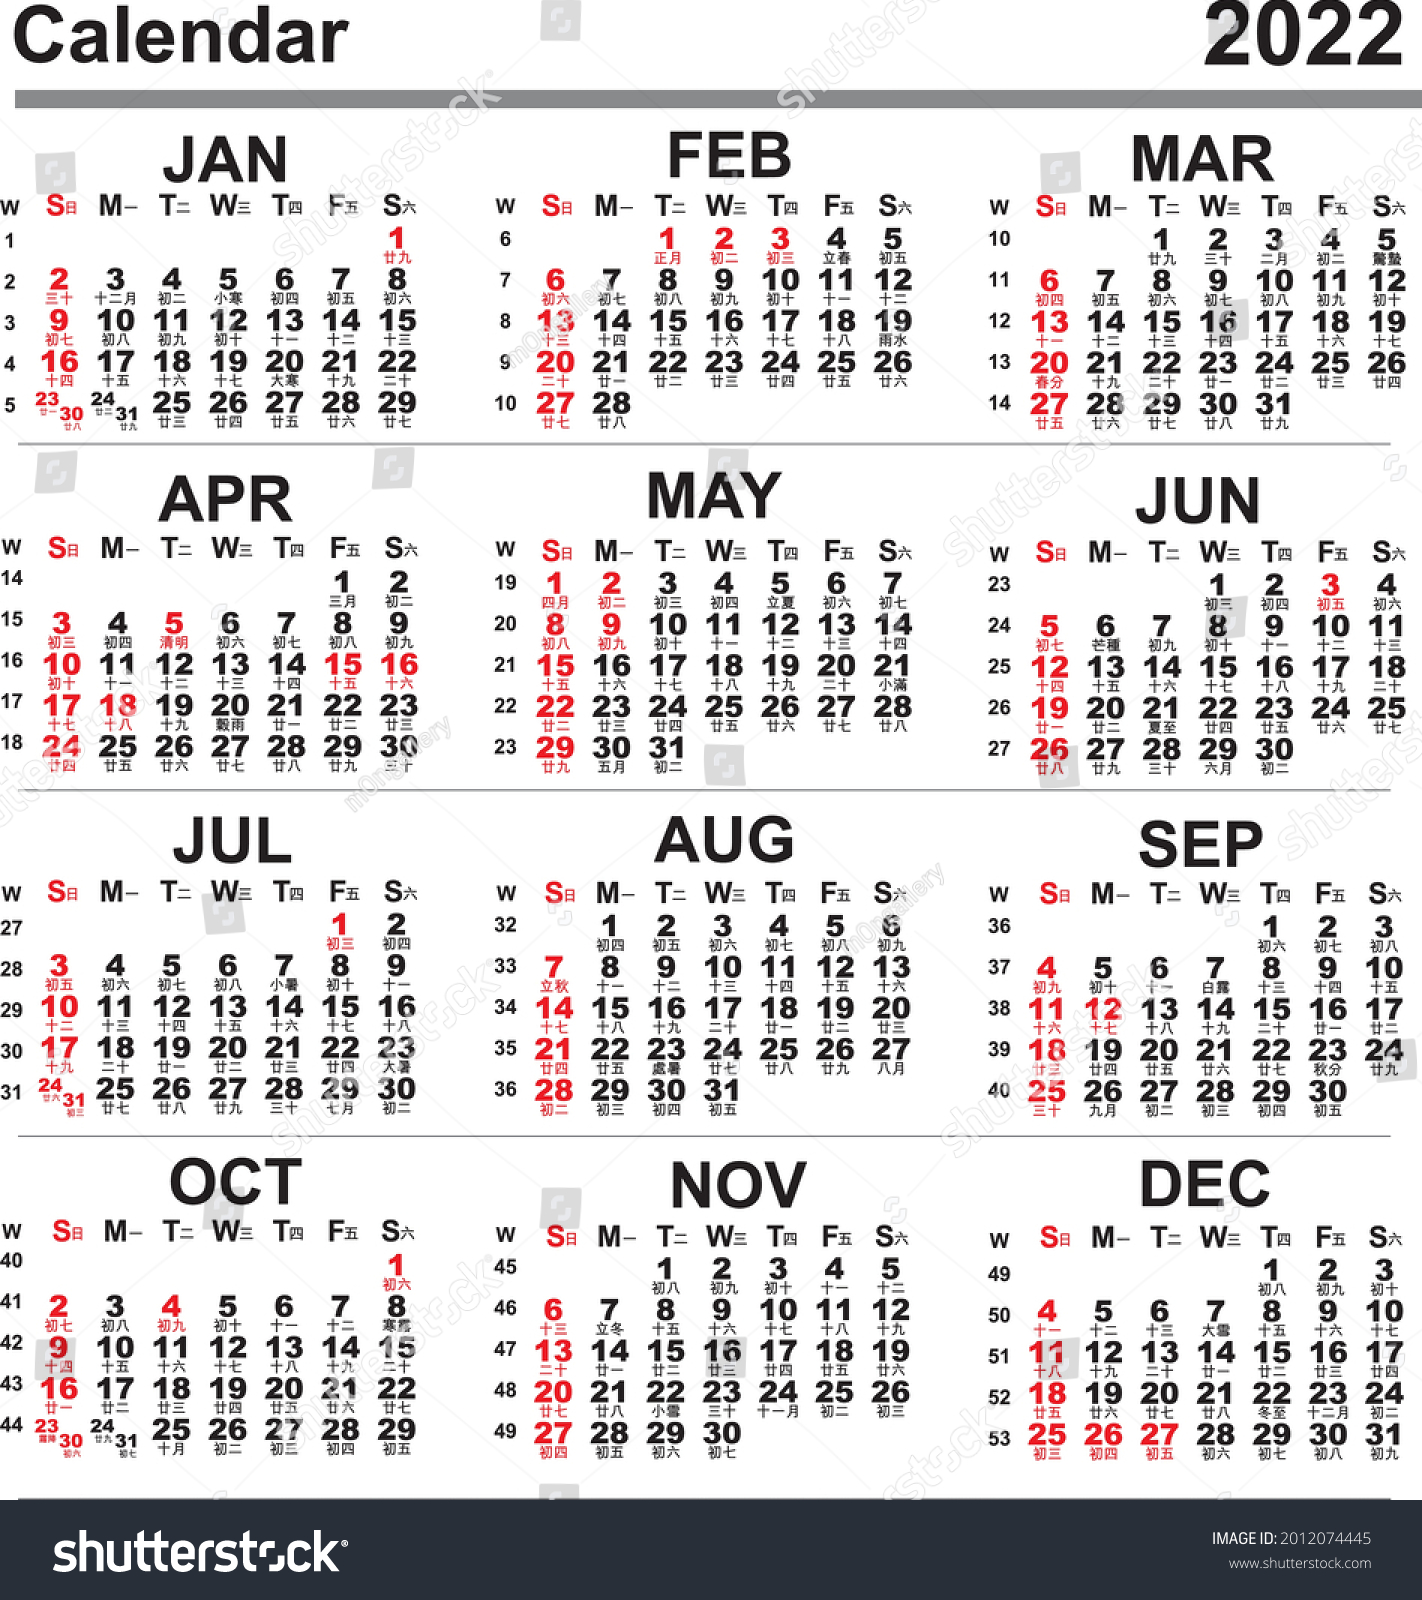 Kalender 2022 mit Hongkong Public Holiday